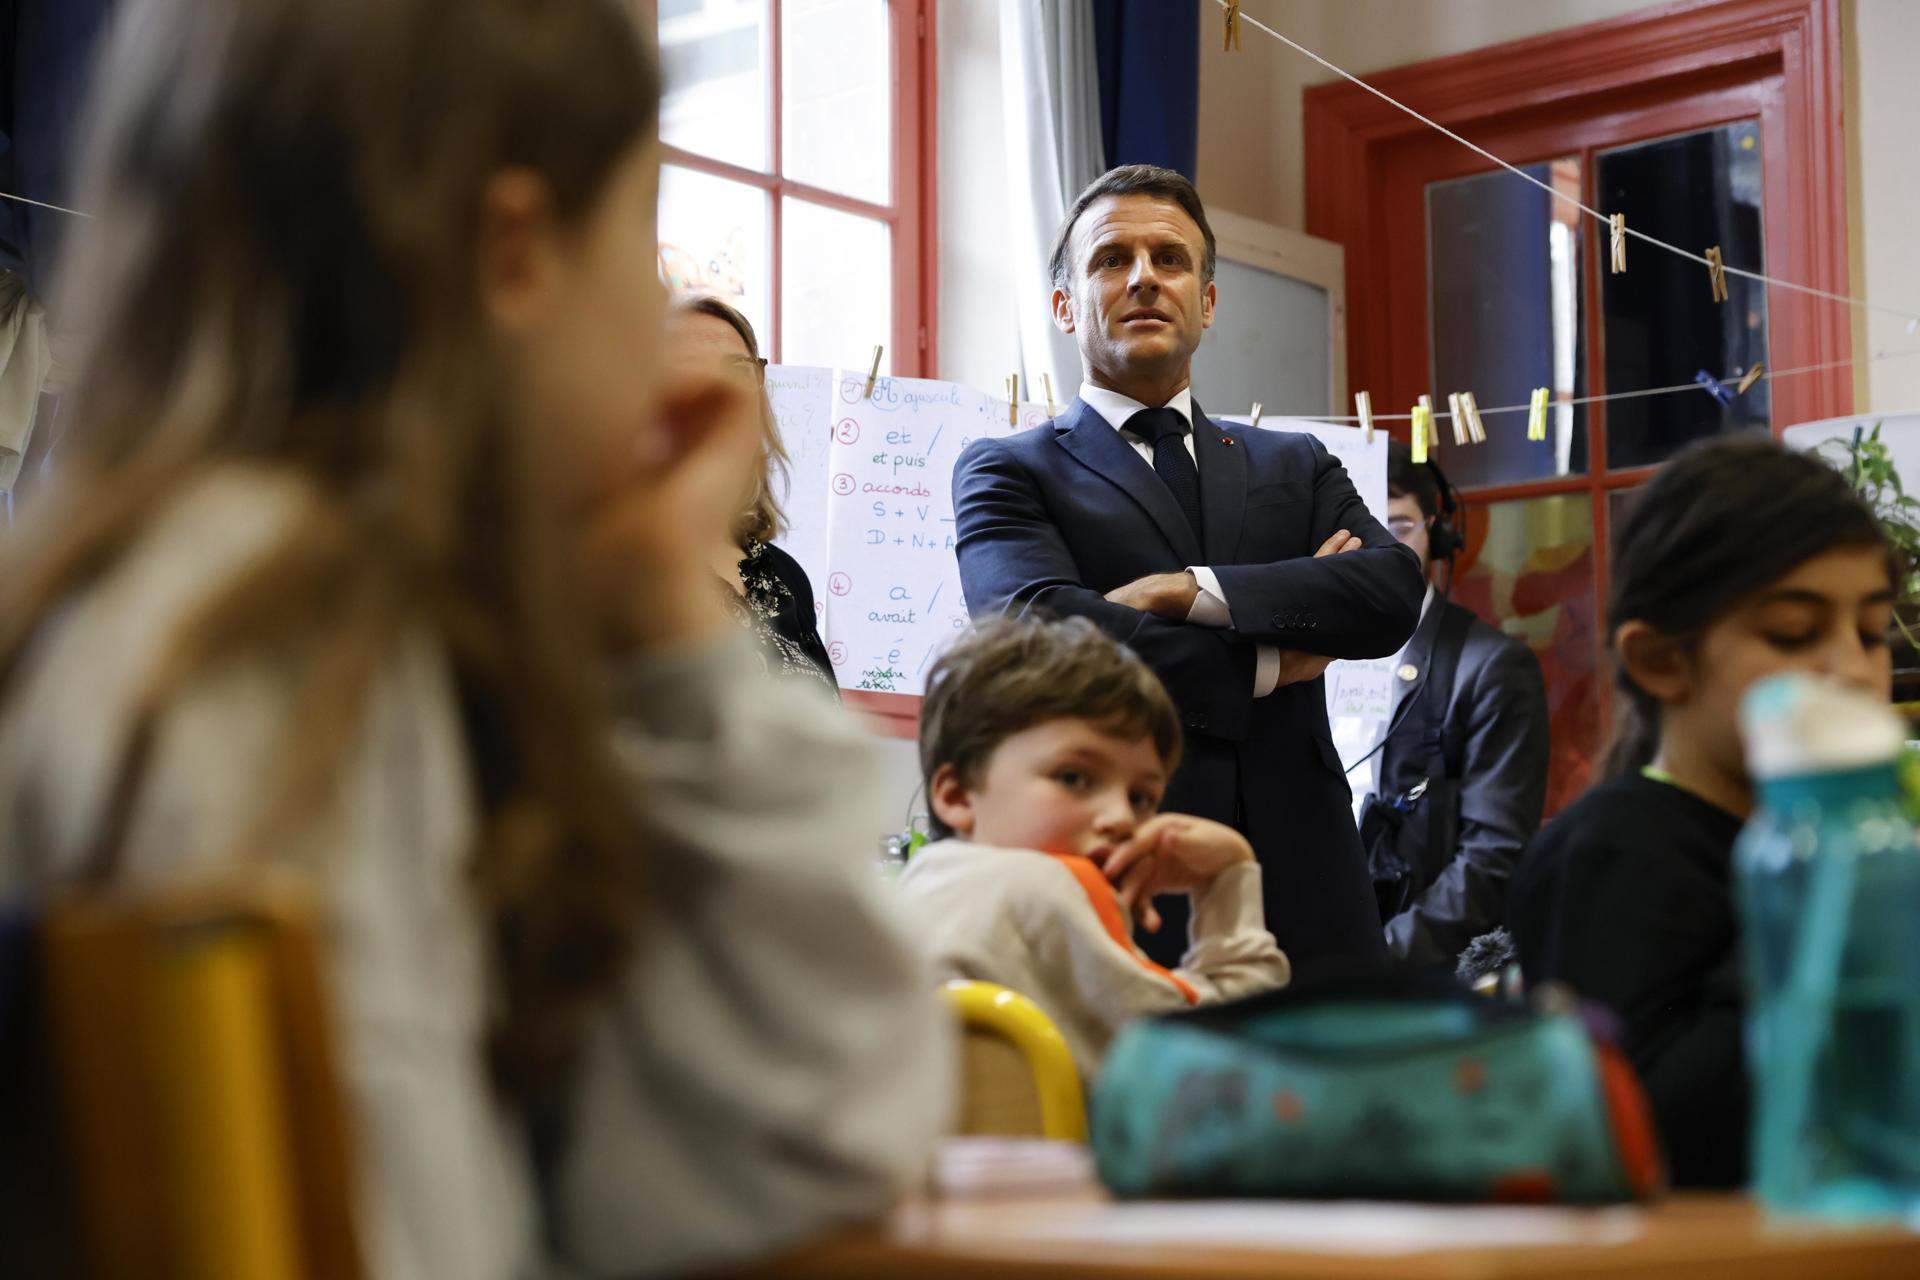 Macron alerta de la "violencia desinhibida" en Francia tras el ataque mortal entre adolescentes